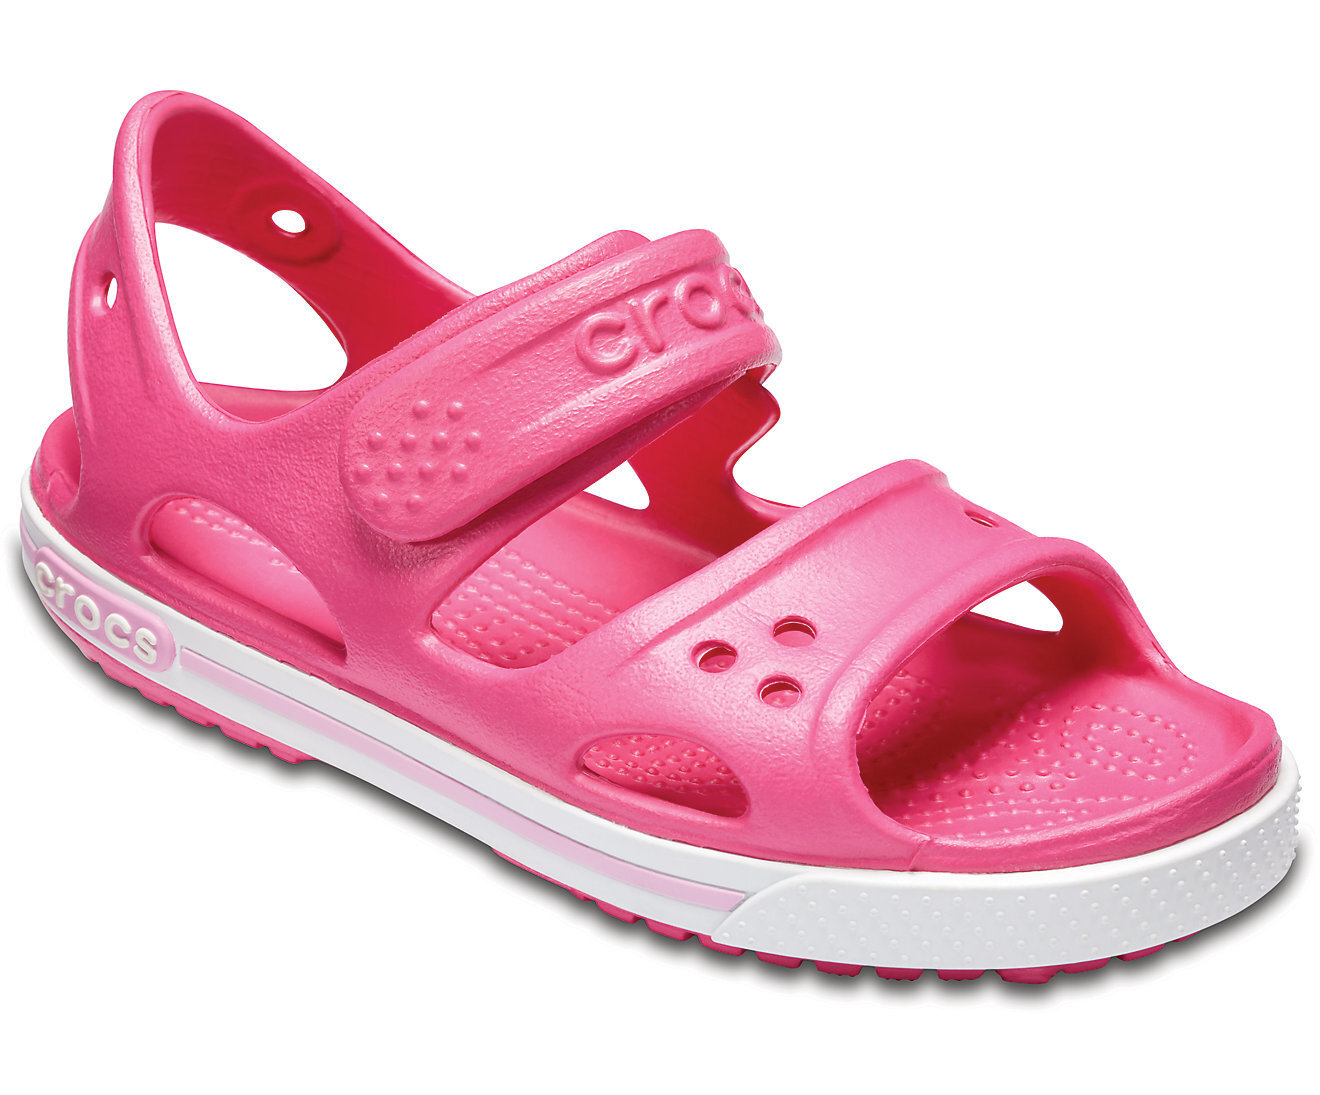 crocs sandals brooklyn